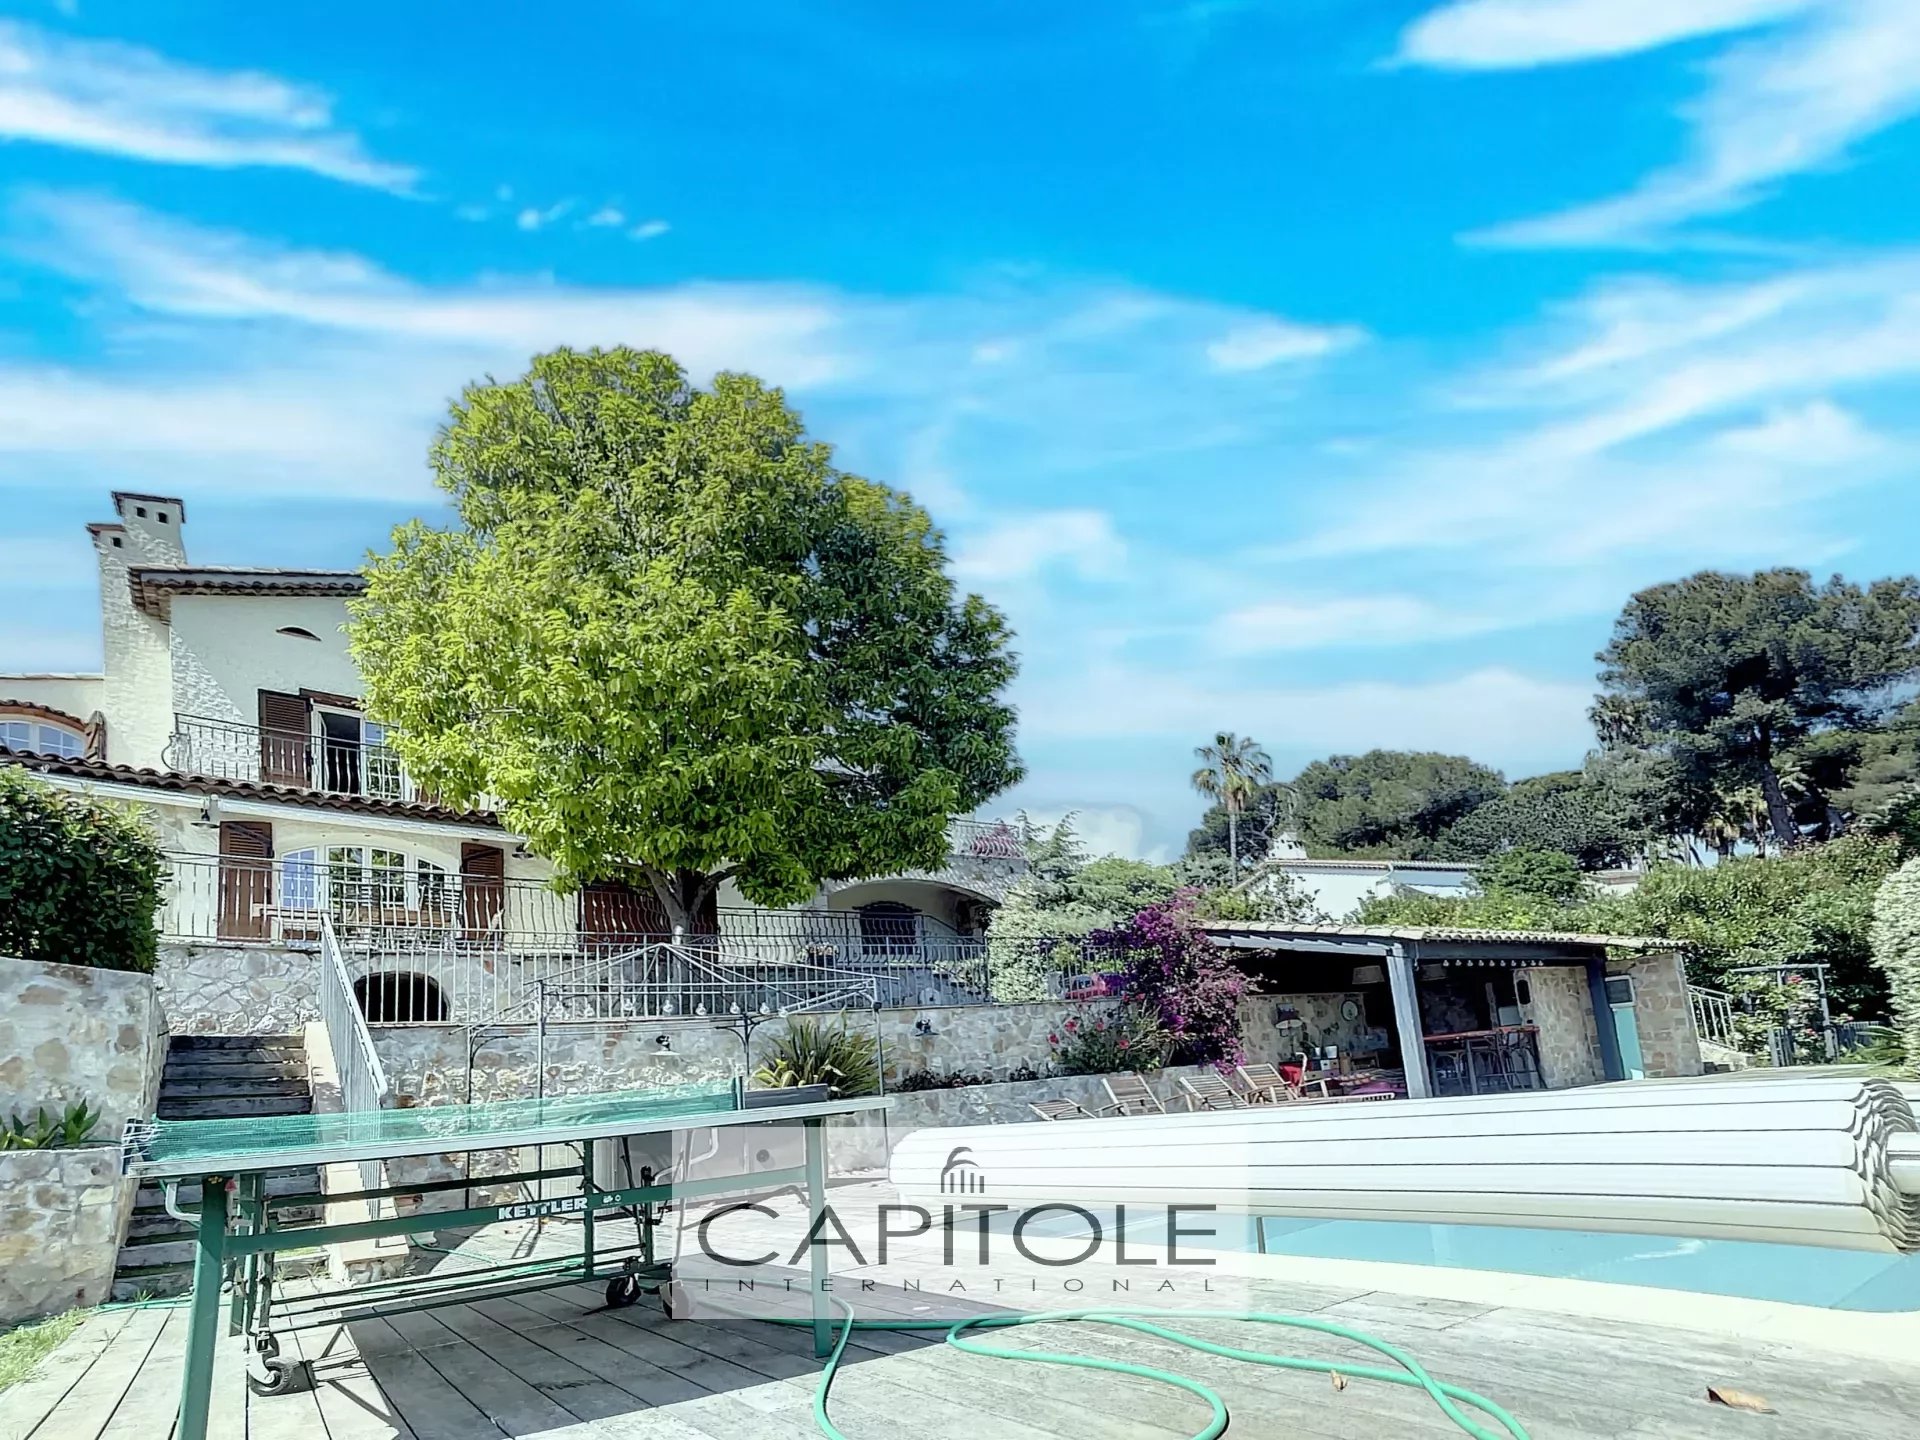 A vendre, EXCLUSIVITE, Antibes, villa provençale 255 m², 7 pièces/ 5 chambres piscine, jardin paysager, garage